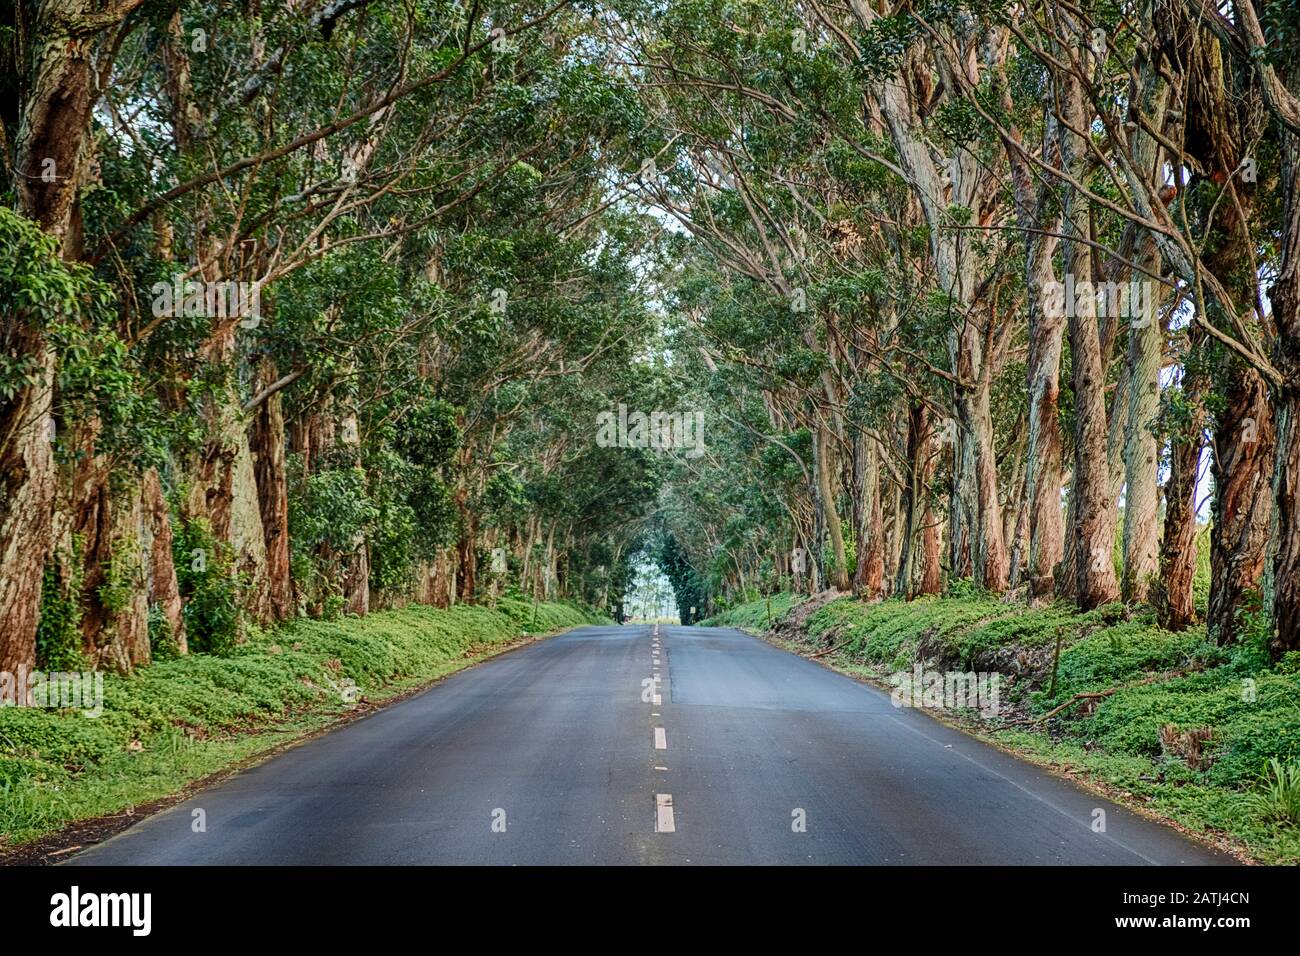 Le tunnel arboré est une longue rangée d'arbres d'eucalyptus le long du premier kilomètre de Maliuhi Road et qui créent une porte naturelle vers la rive sud de Kauai. Banque D'Images